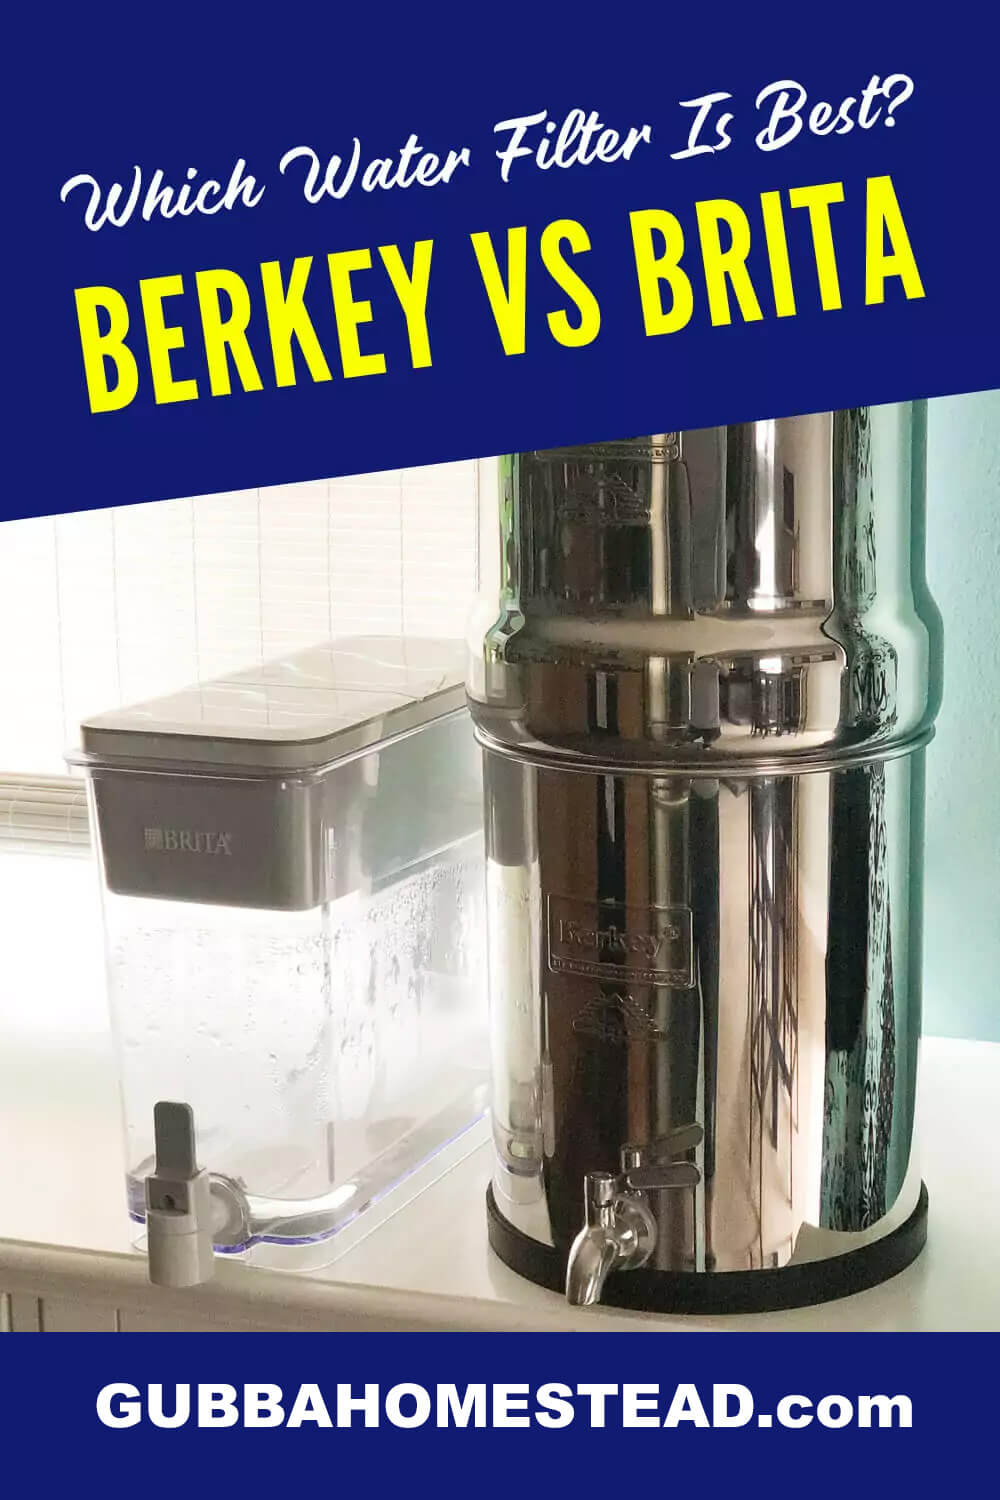 Berkey Vs Brita Which Water Filter Is Best?